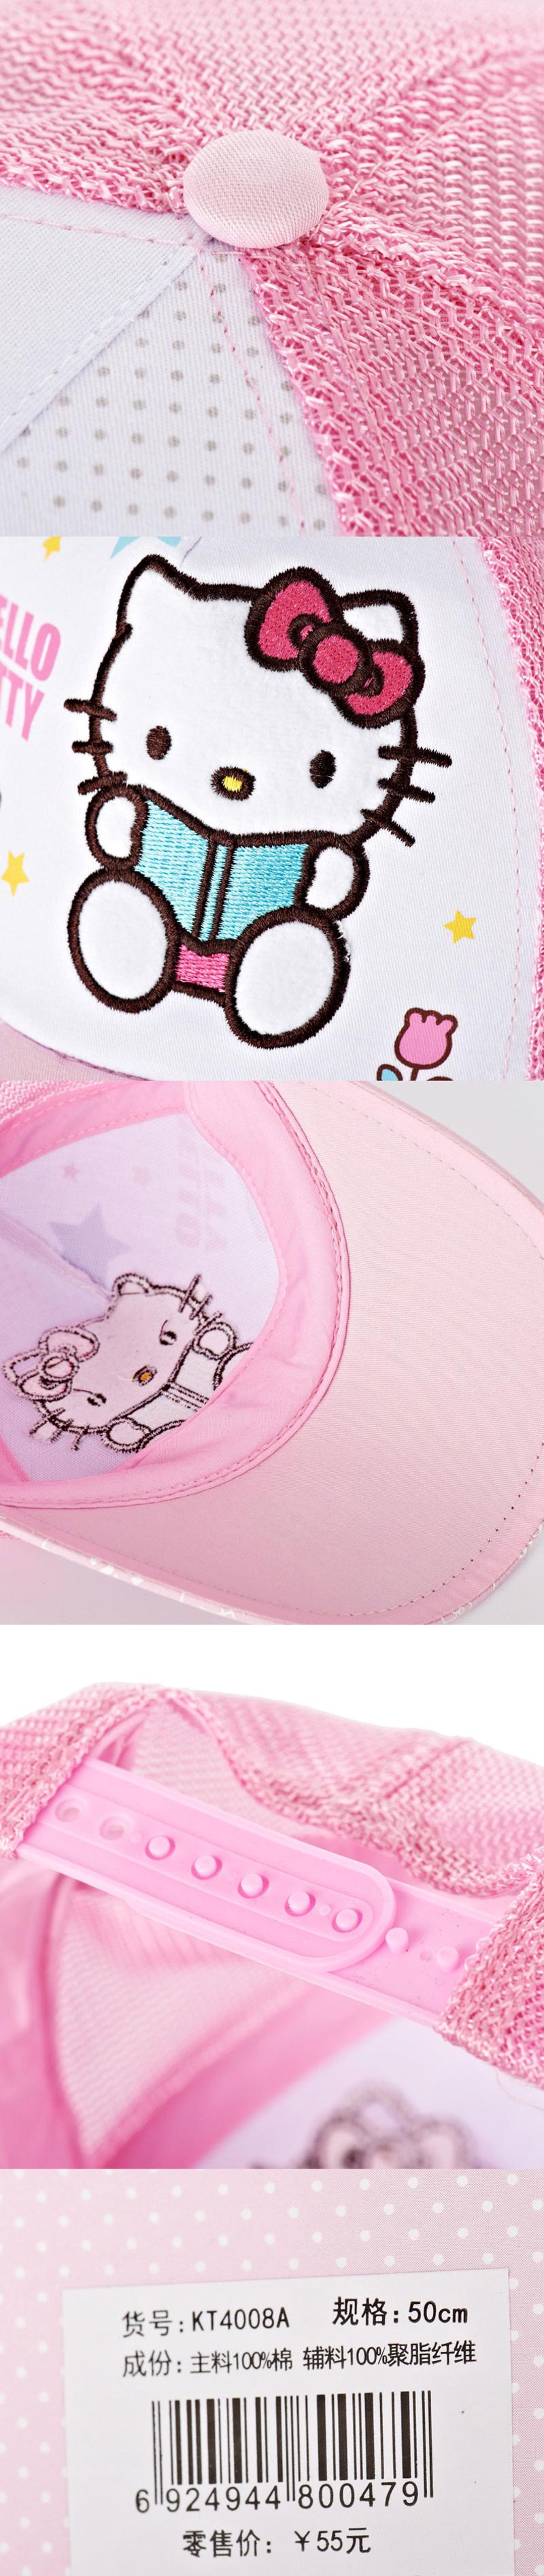 Hello Kitty儿童空顶帽棒球帽 女童网眼遮阳帽太阳帽